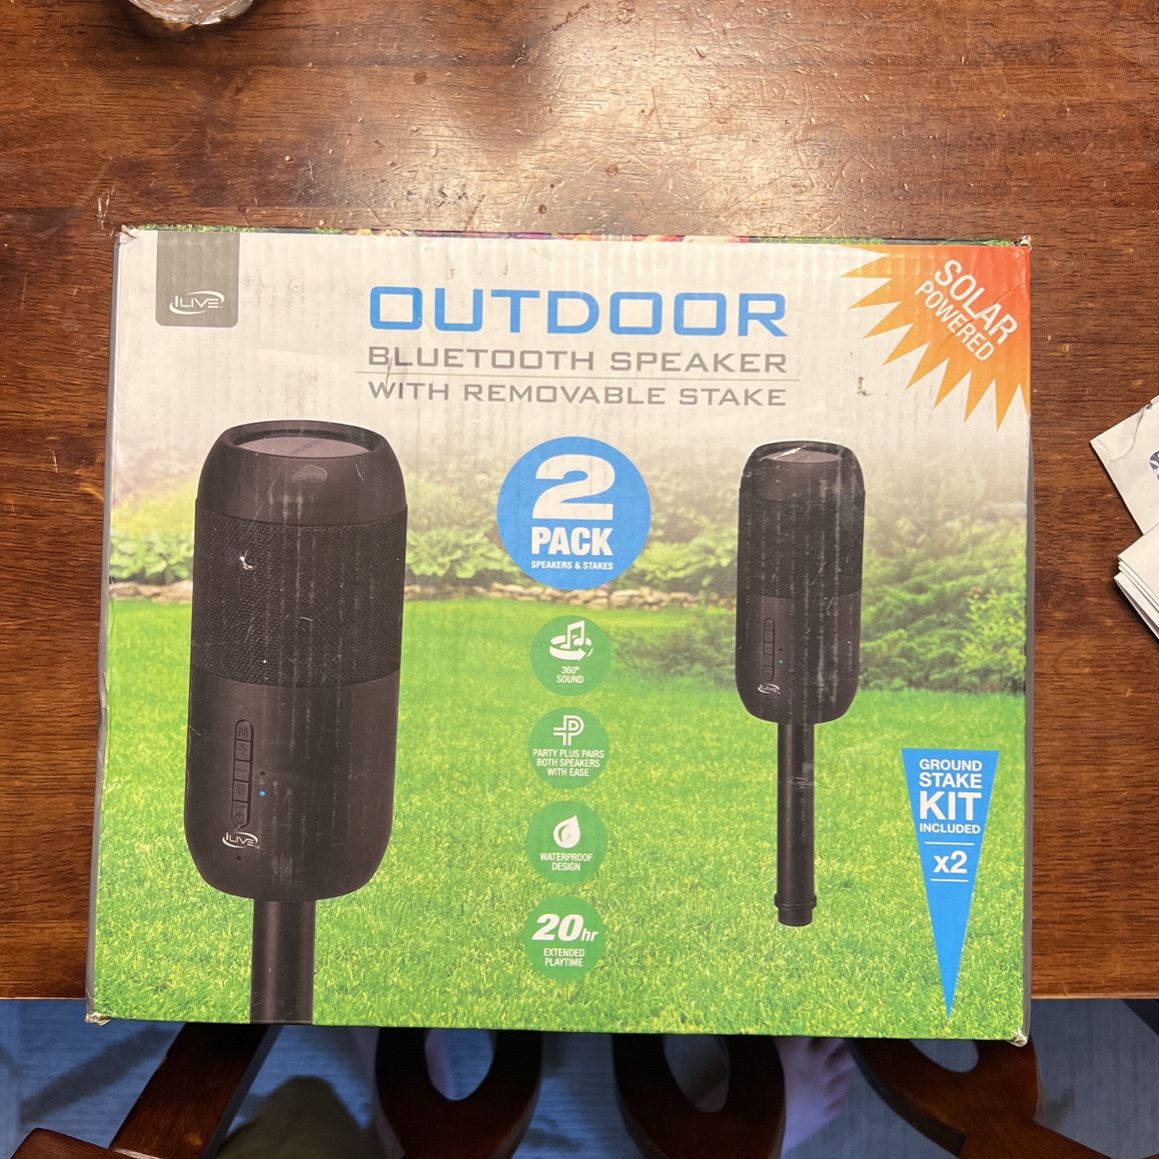 Outdoor Bluetooth Speakers